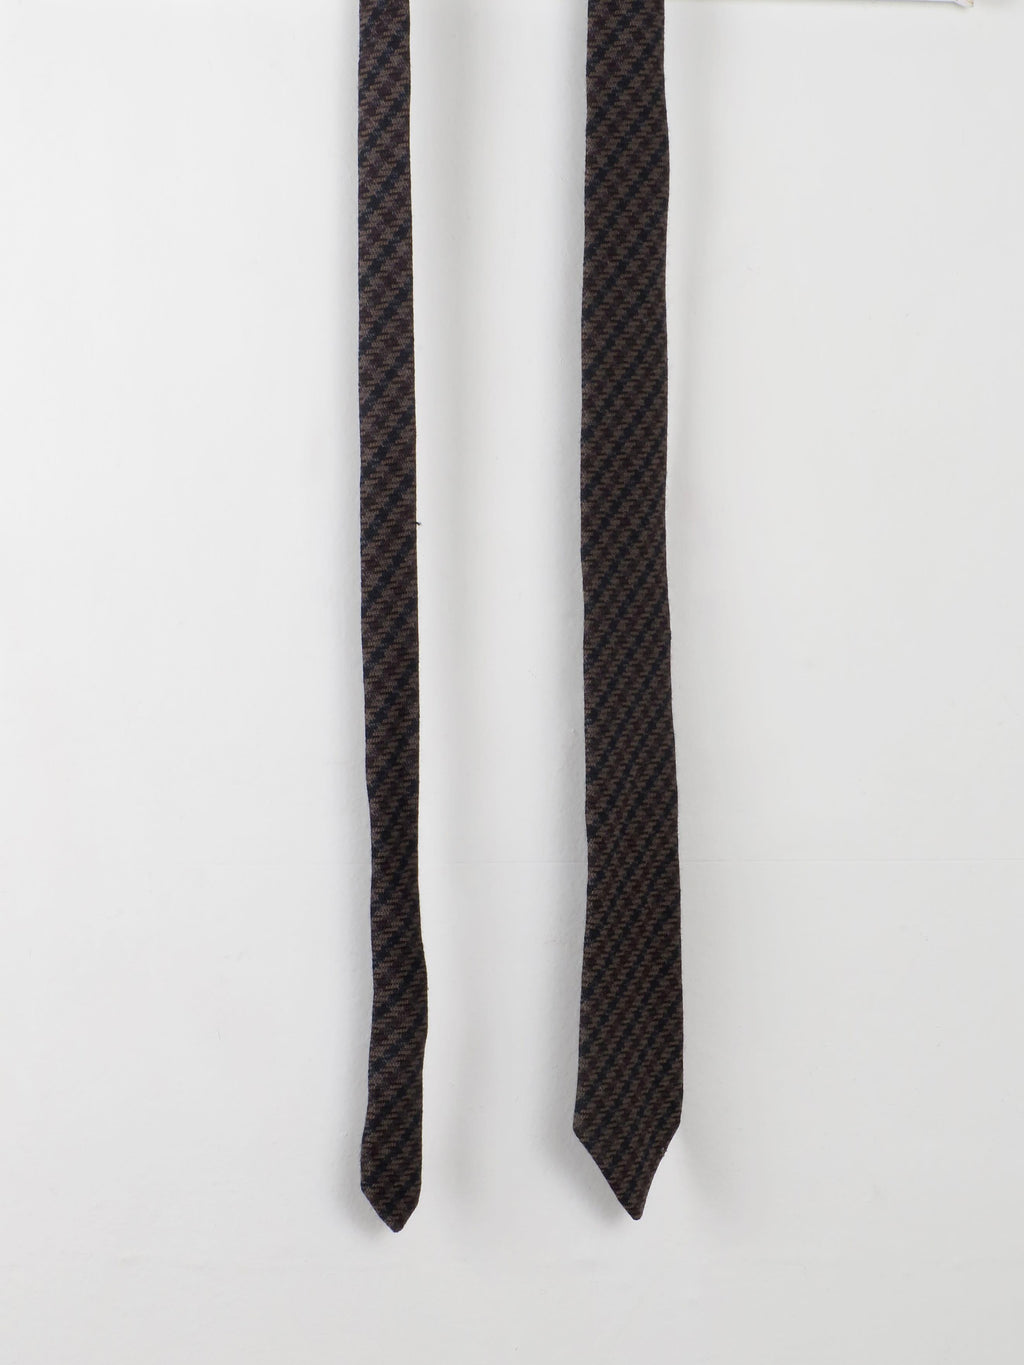 Vintage Tweed Tie - The Harlequin